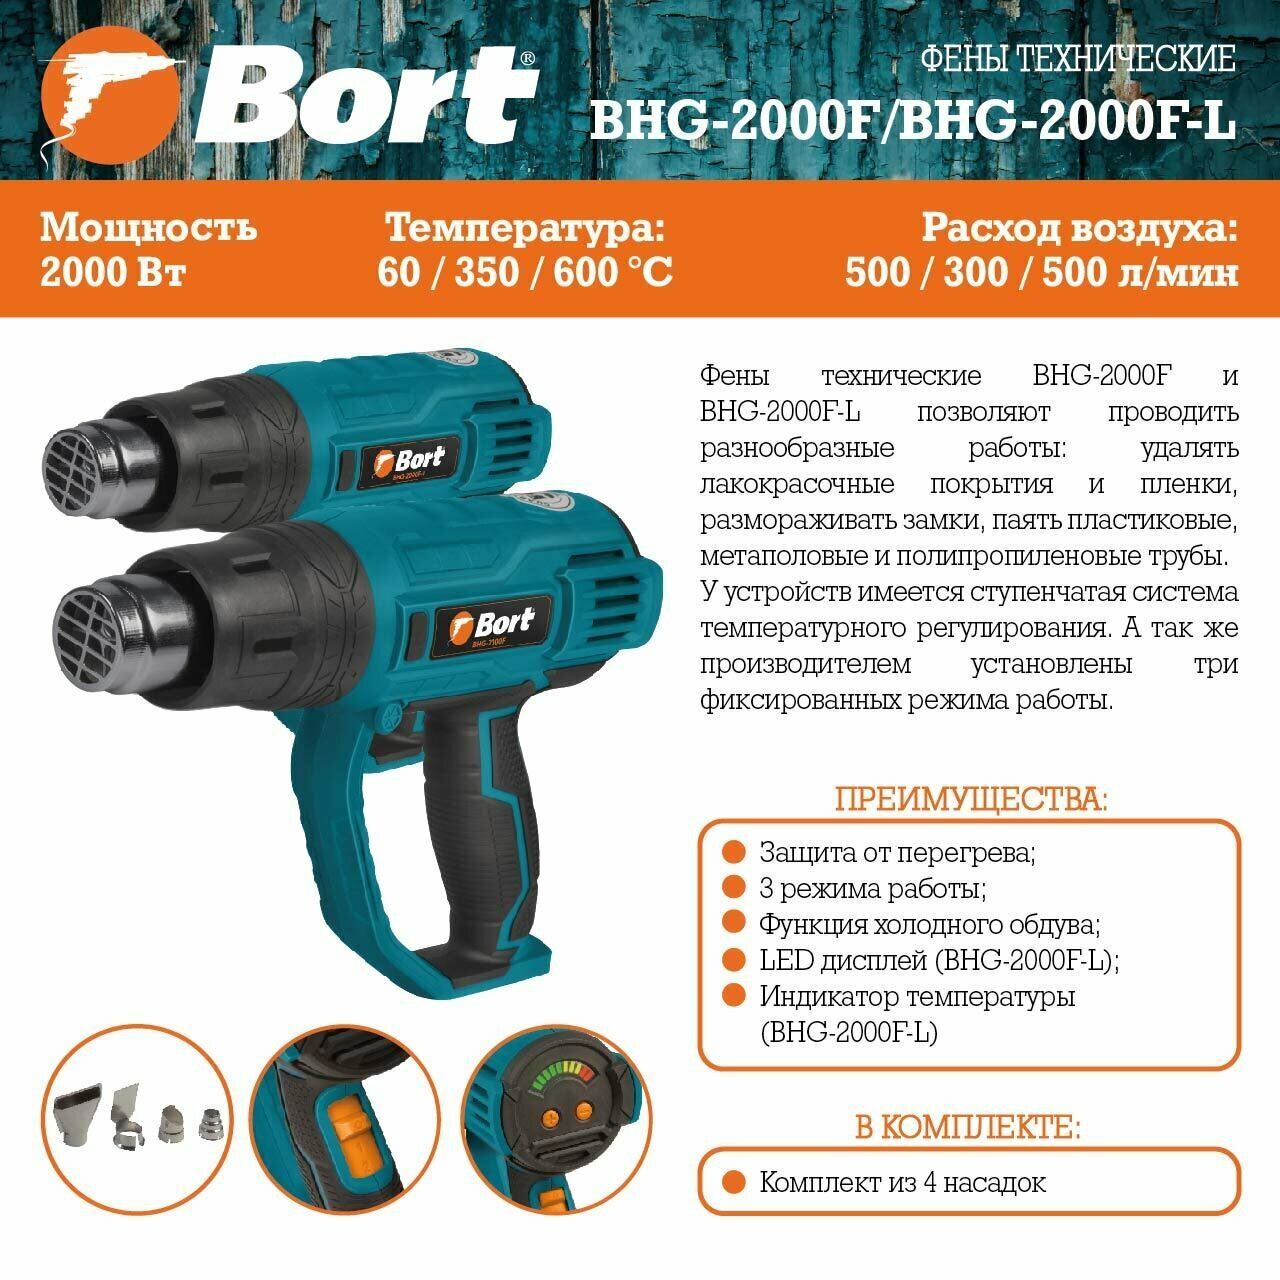 Технический фен BORT BHG-2000F-L [93411126] - фото №6